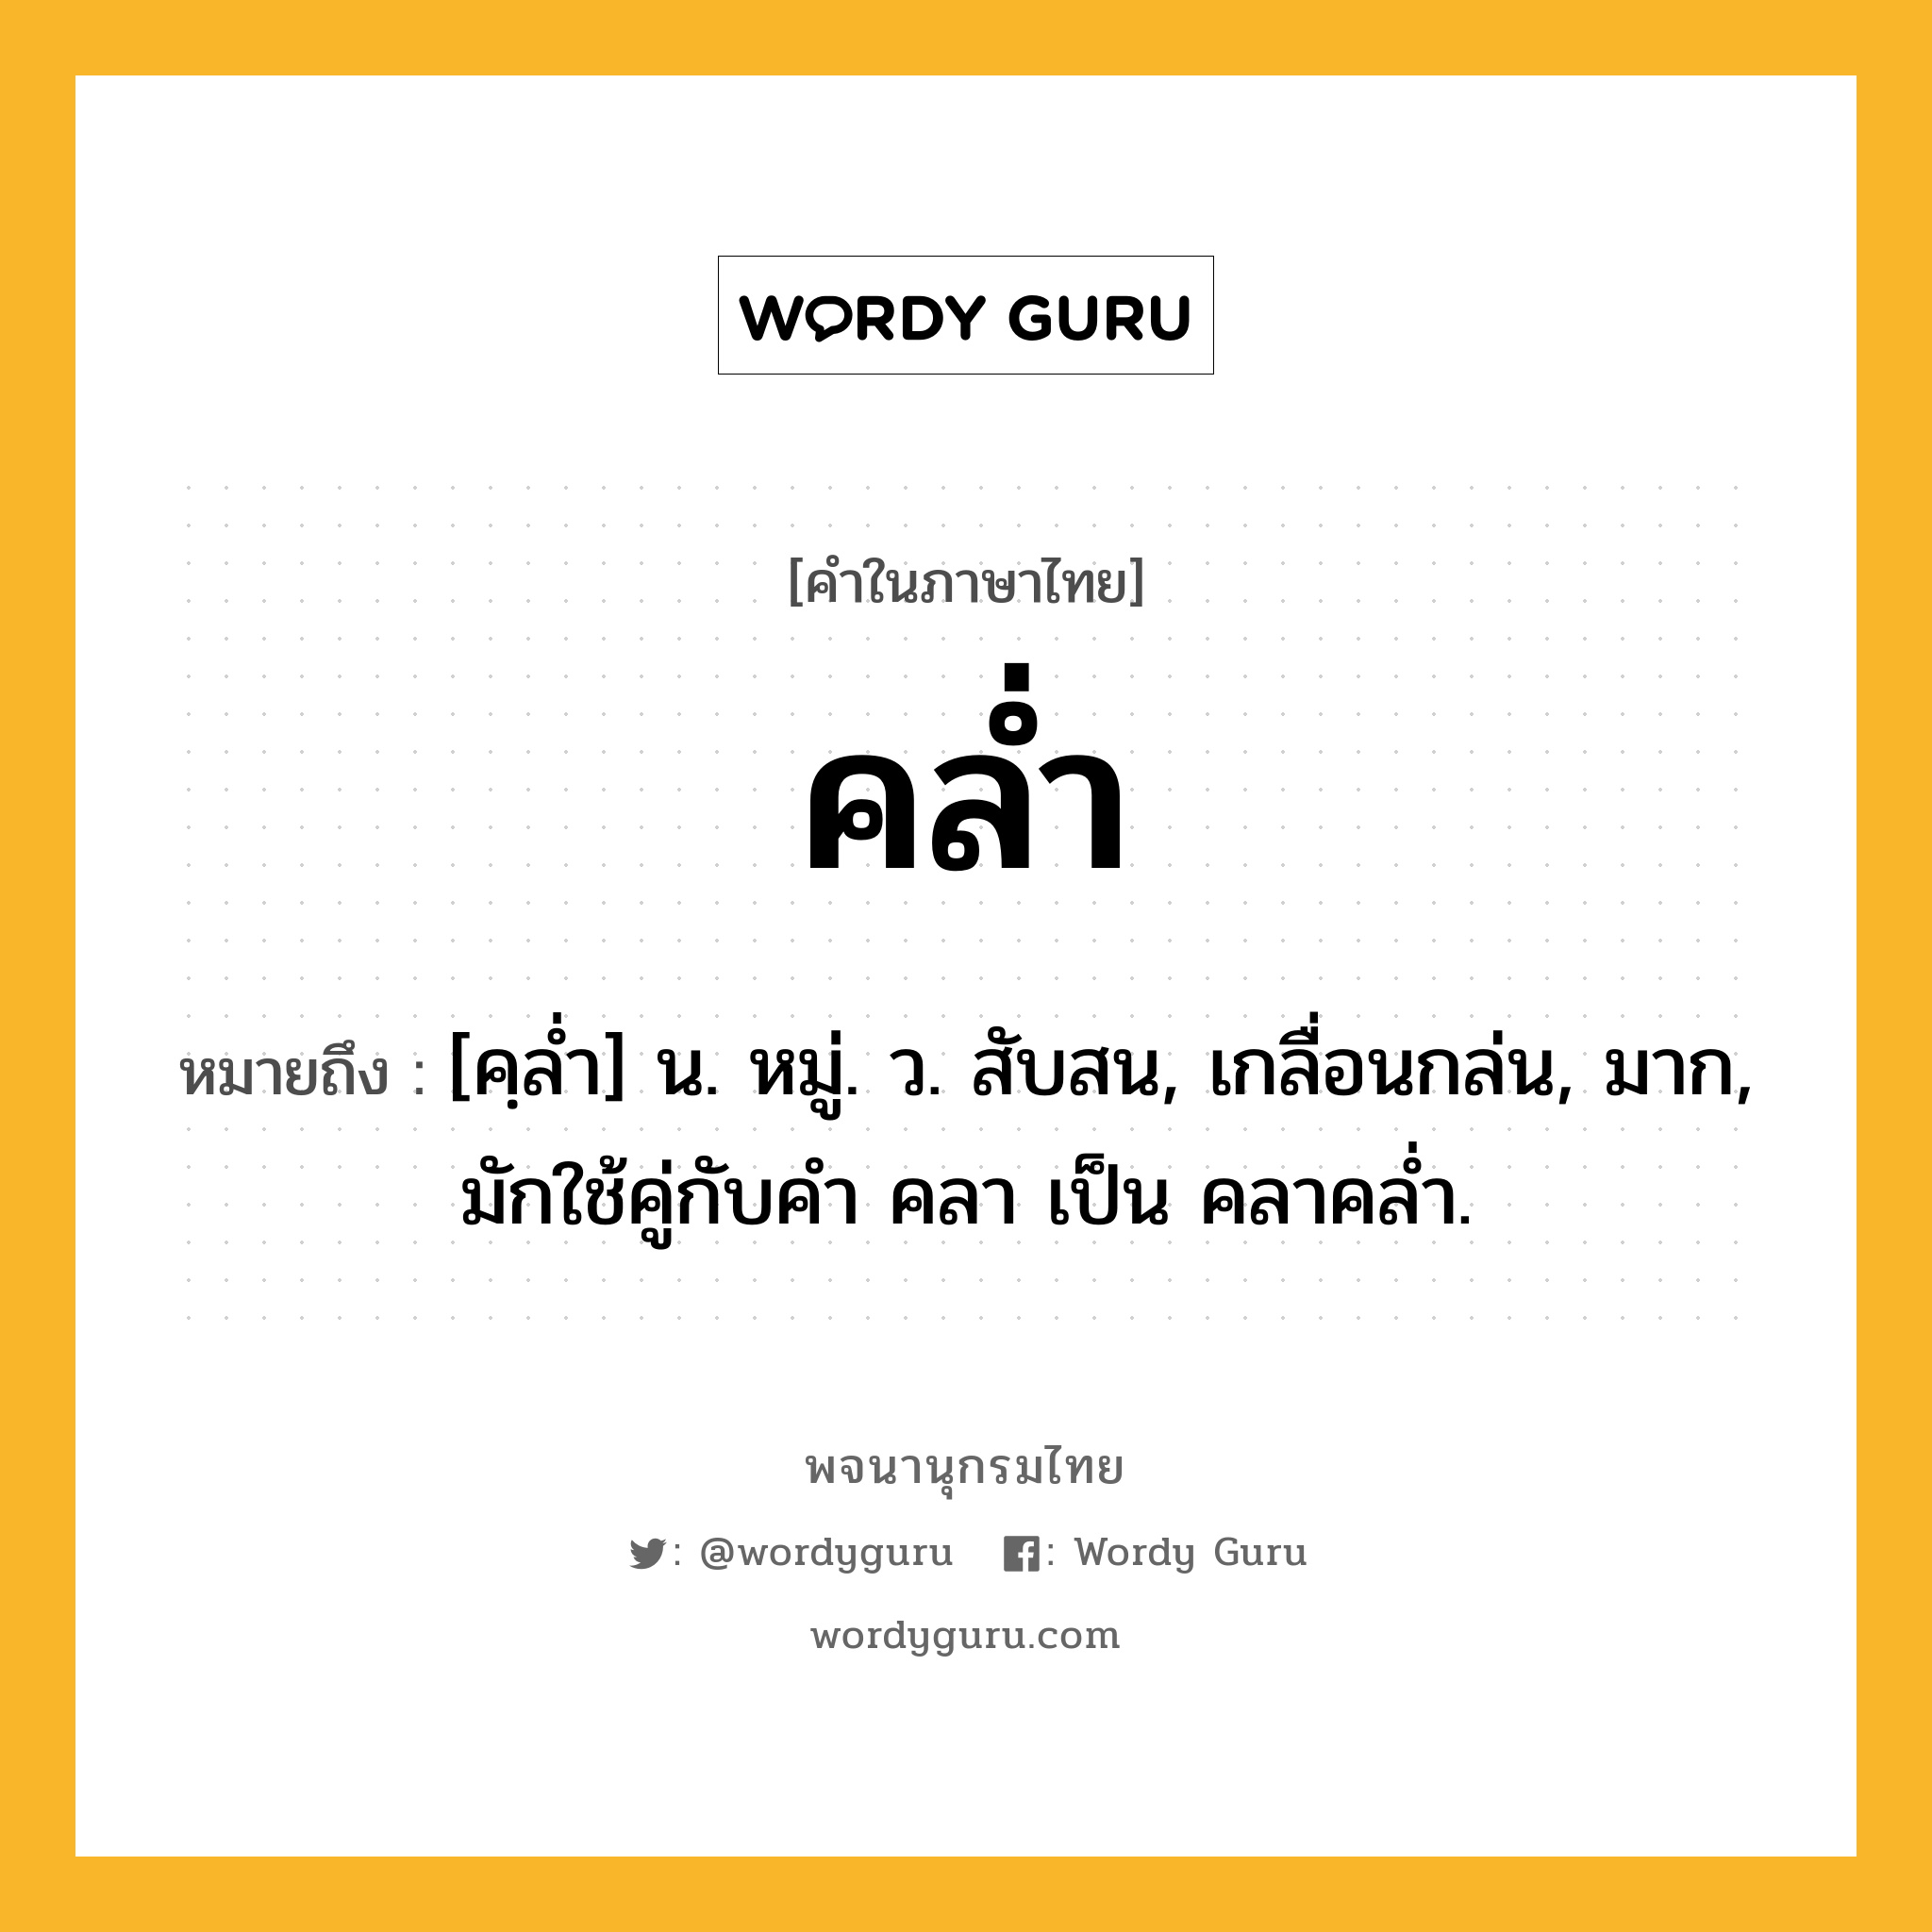 คล่ำ หมายถึงอะไร?, คำในภาษาไทย คล่ำ หมายถึง [คฺลํ่า] น. หมู่. ว. สับสน, เกลื่อนกล่น, มาก, มักใช้คู่กับคำ คลา เป็น คลาคล่ำ.